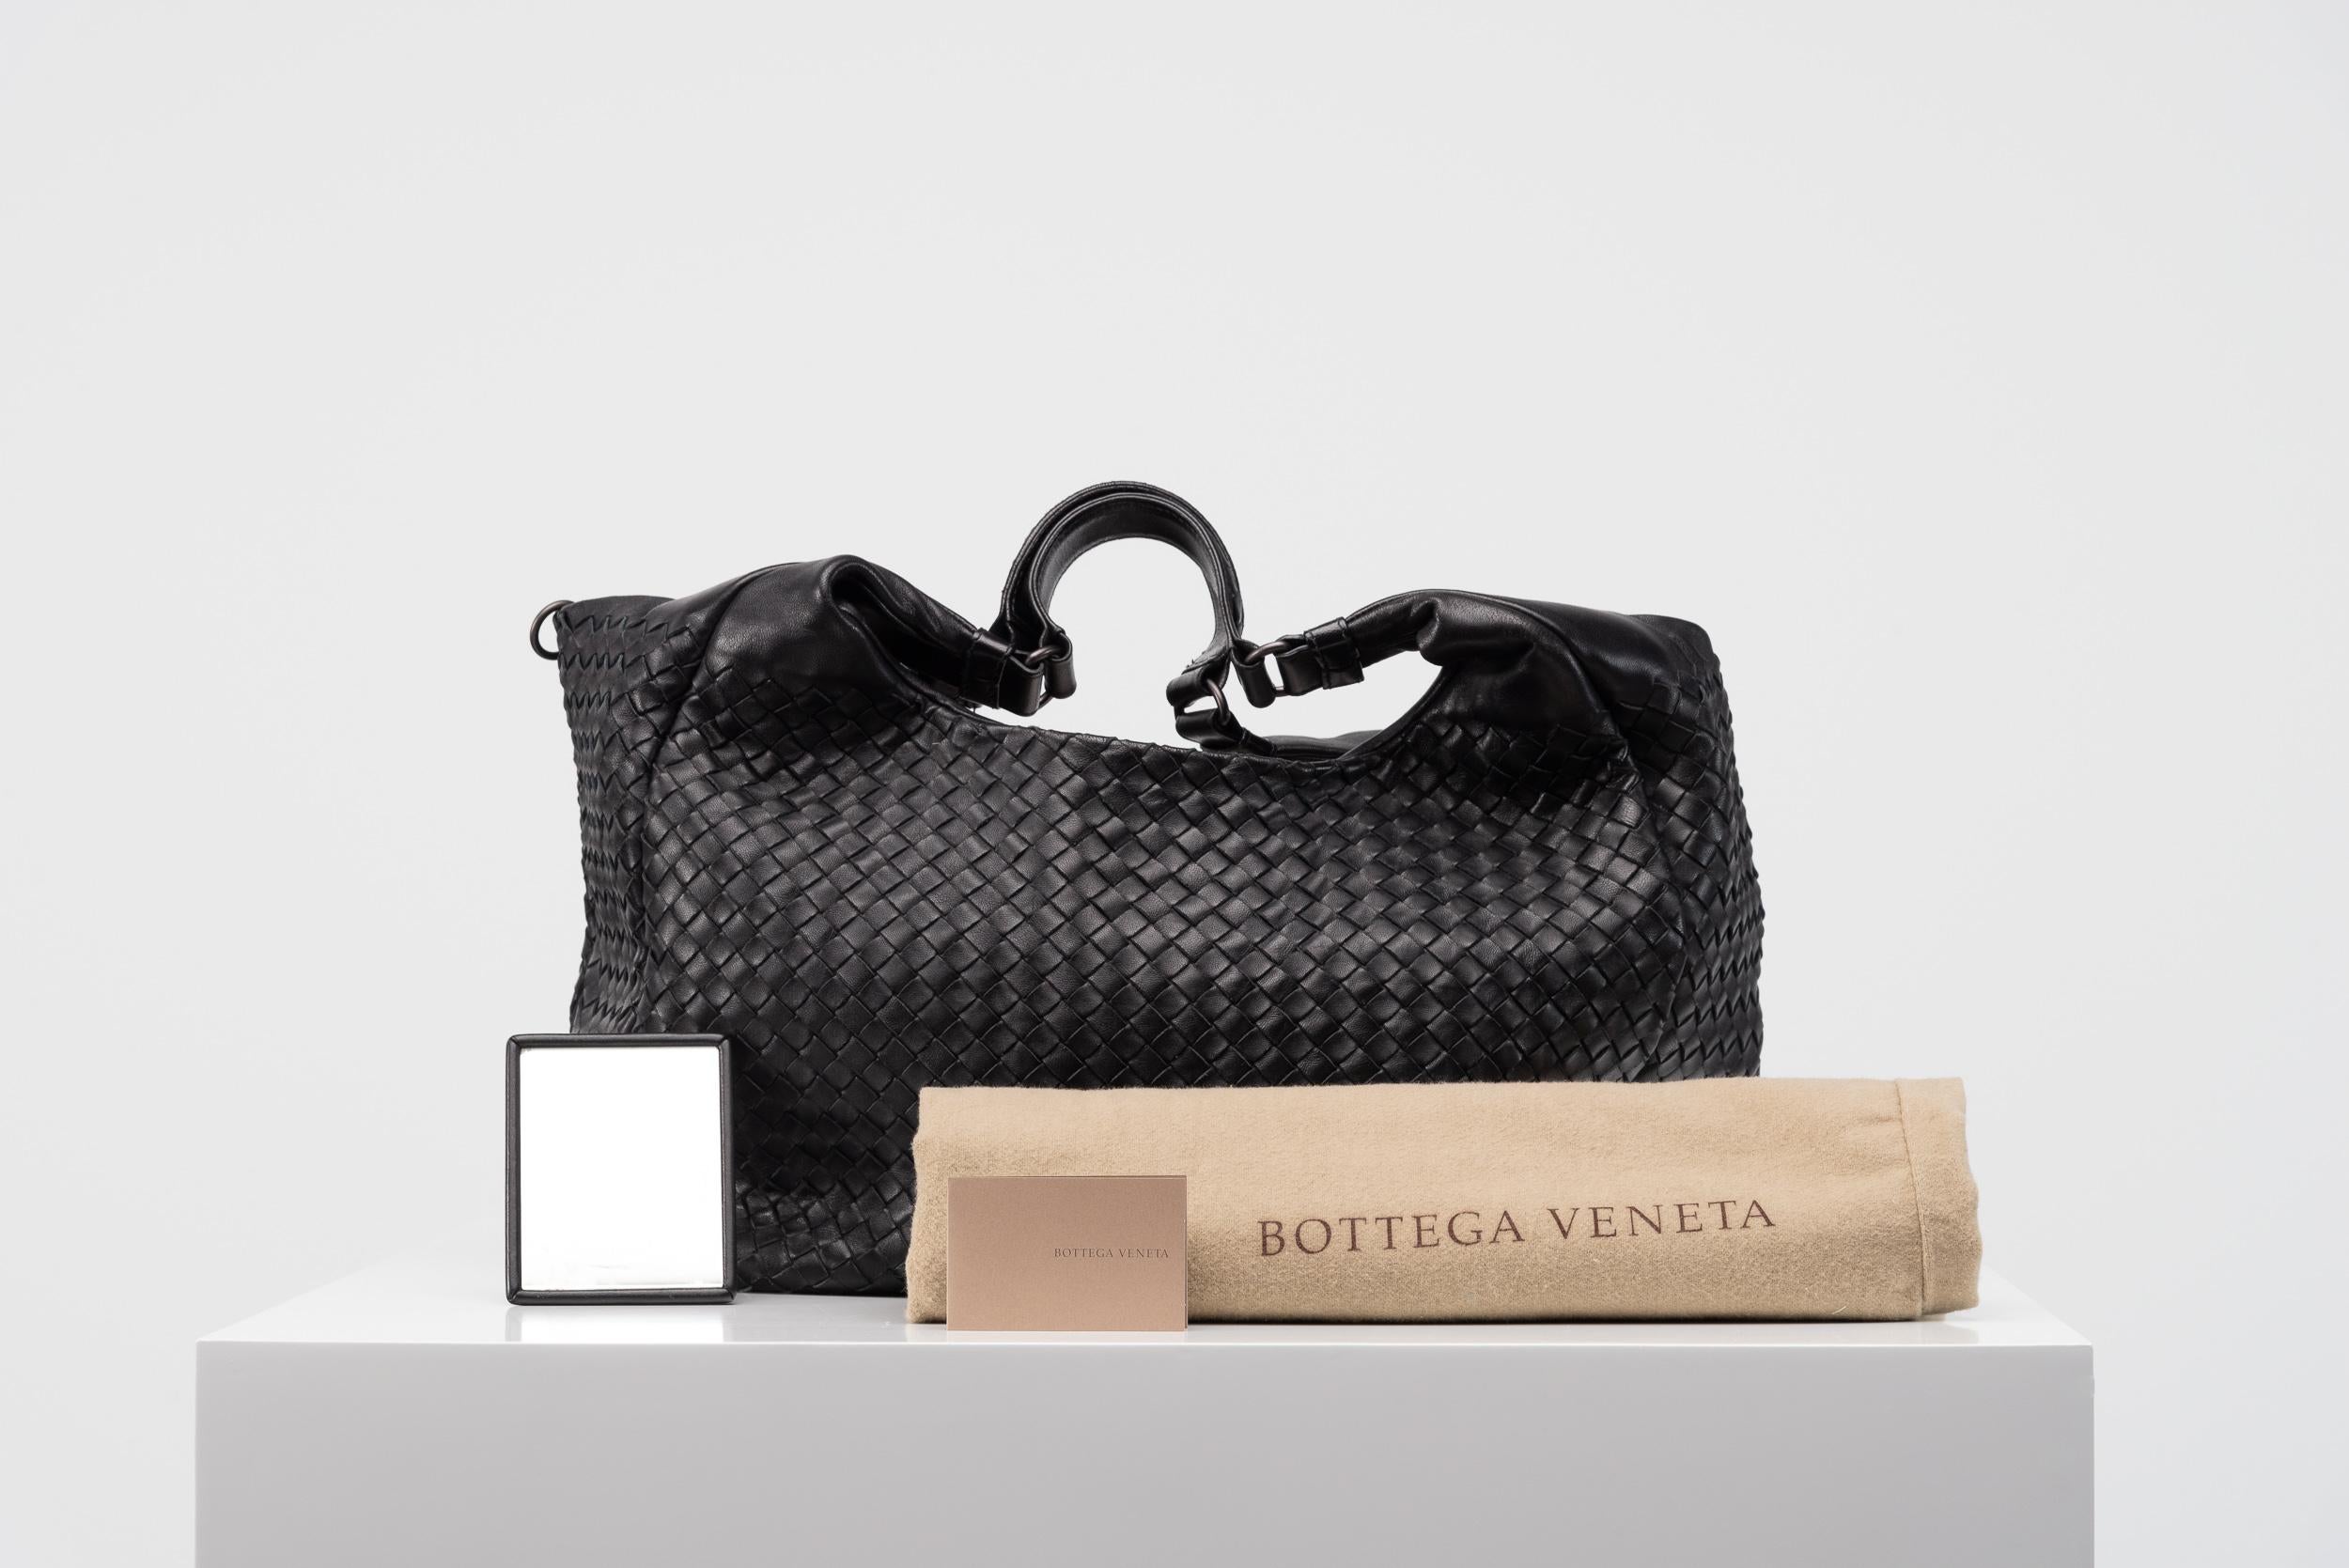 Aus der Kollektion von SAVINETI bieten wir diese Tasche von Bottega Veneta an:
- Marke: Bottega Veneta
- Modell: Intrecciato Campana Hobo
- Zustand: Gut
- MATERIALIEN: Nappaleder
- Extras: Staubbeutel

Diese funktionelle Handtasche aus dem für